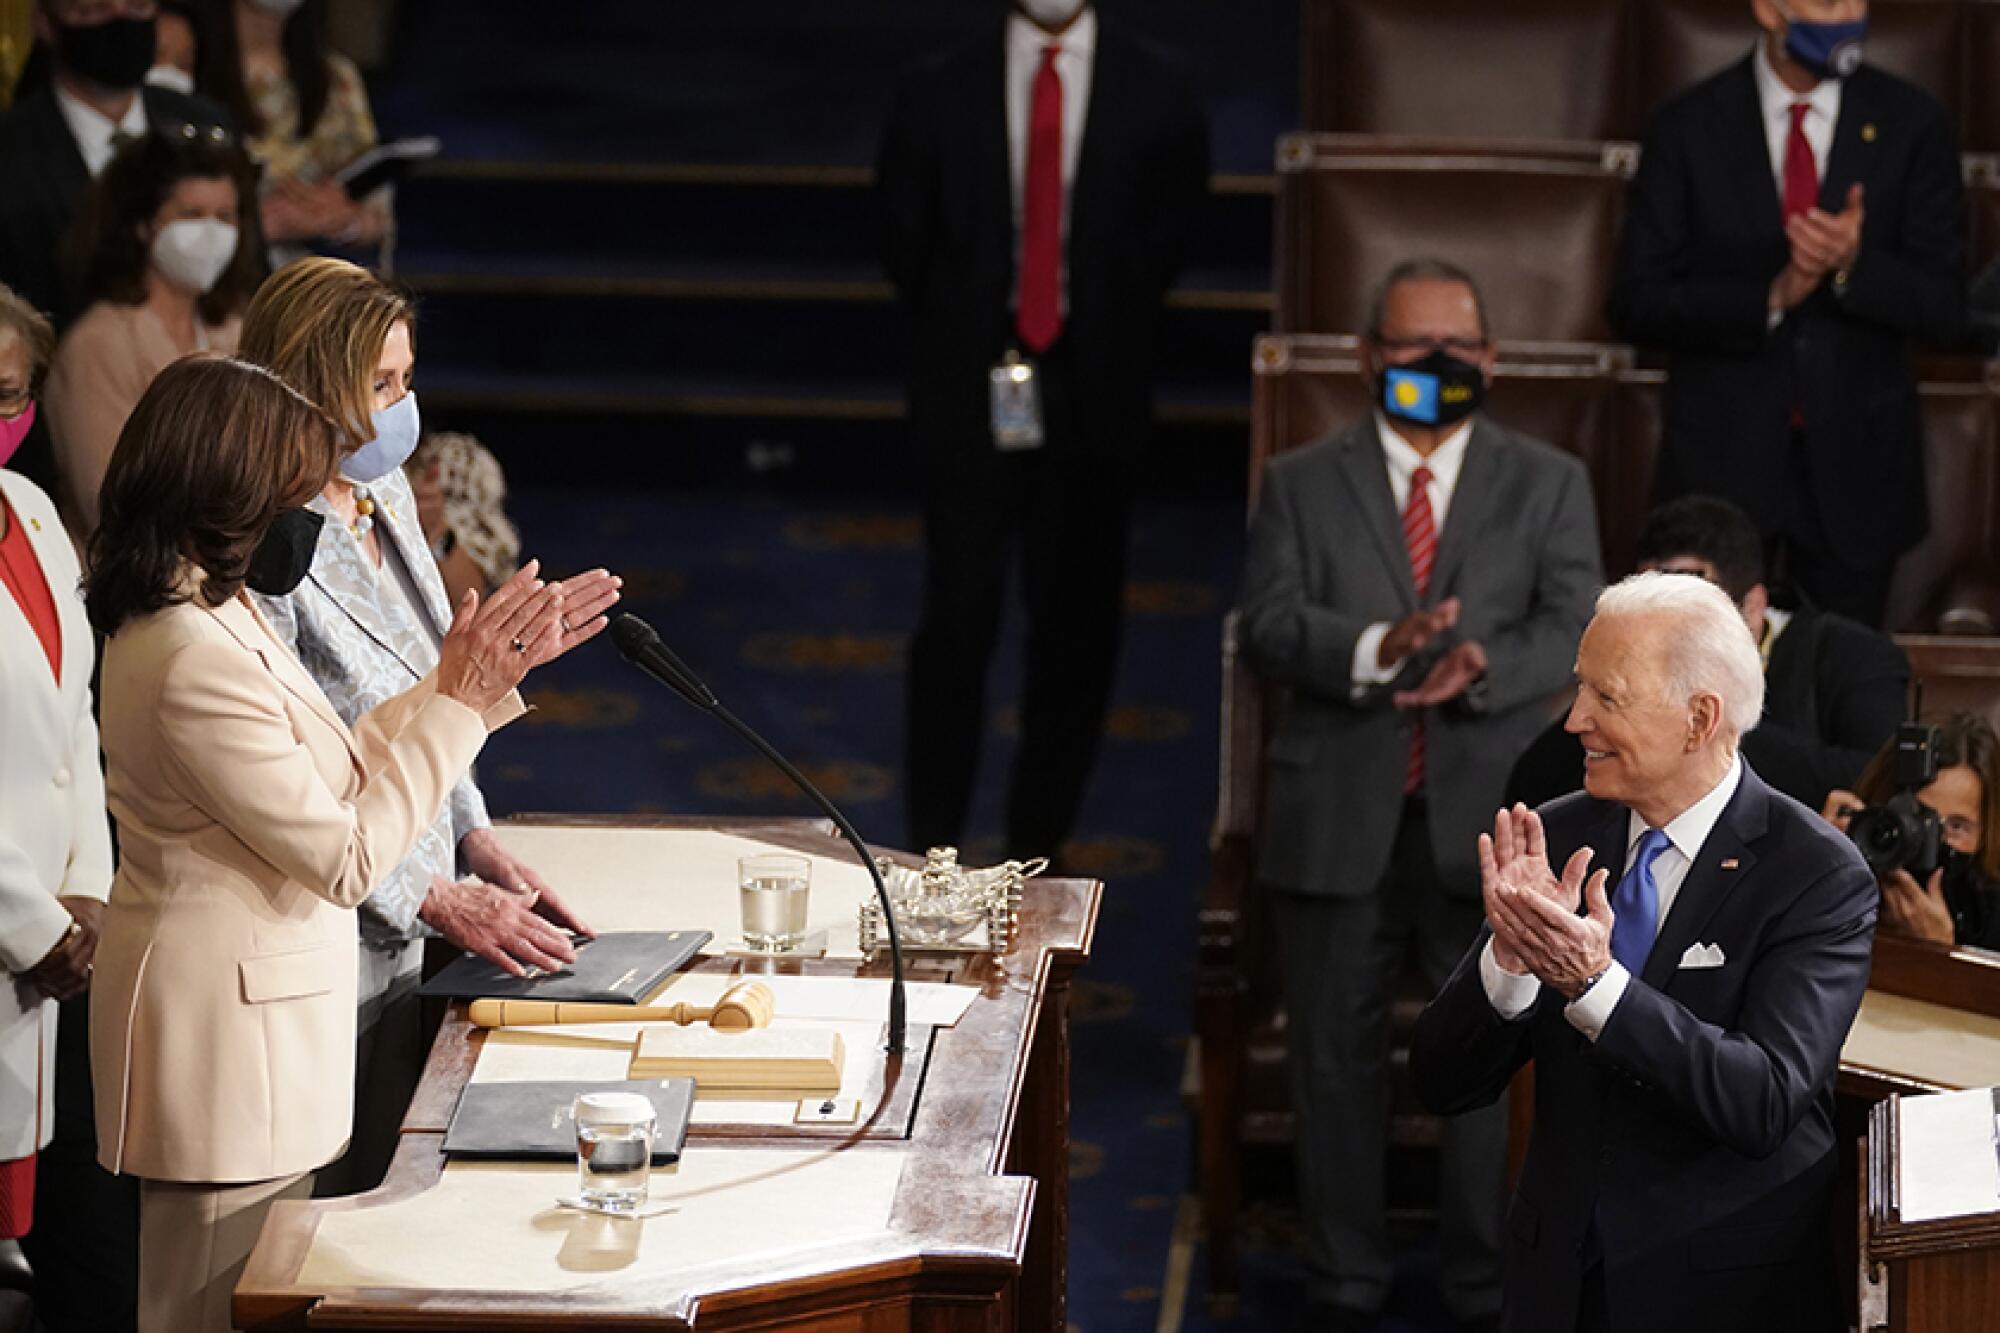 President Biden faces two women on a dais.